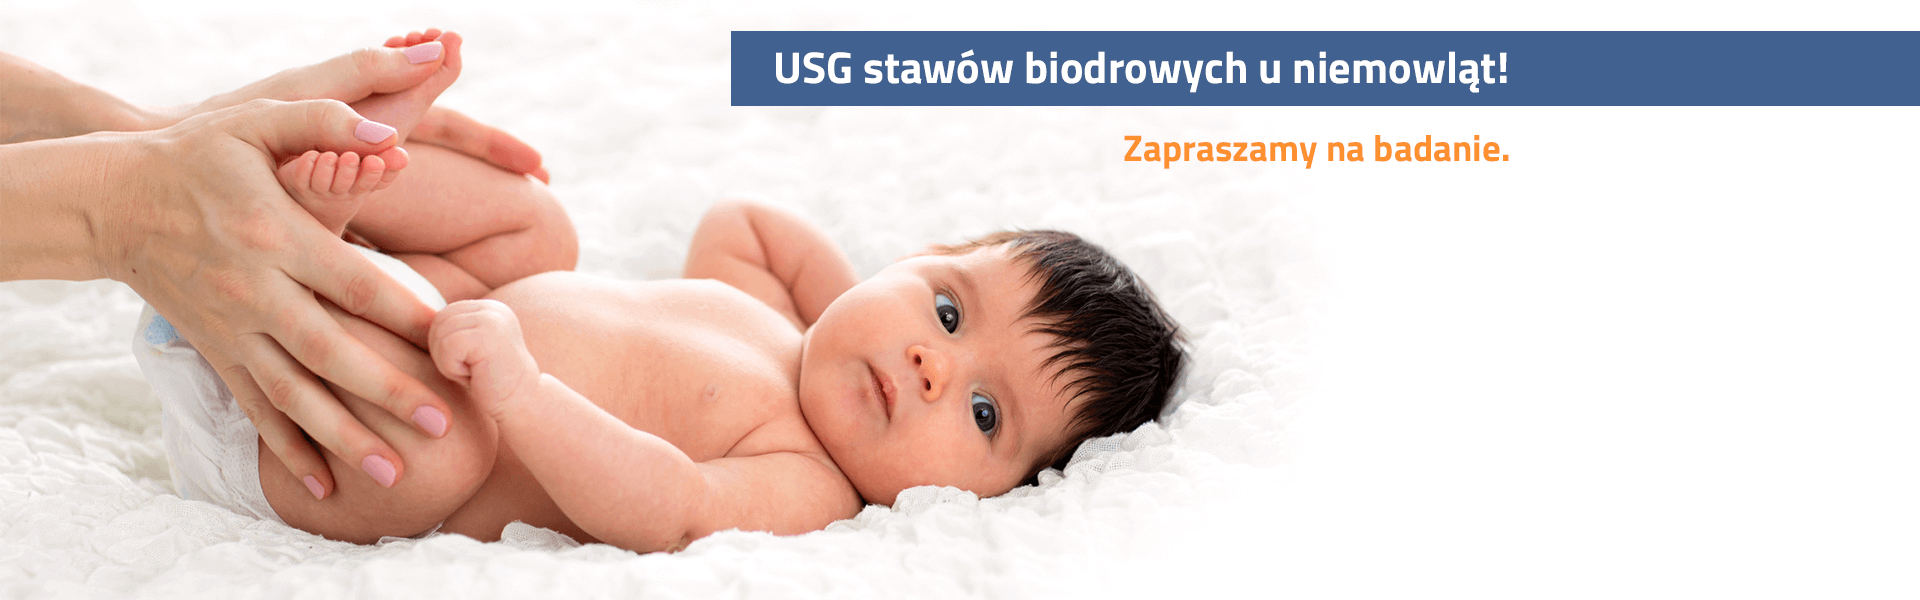 Medicamed USG stawów biodrowych u niemowląt slider